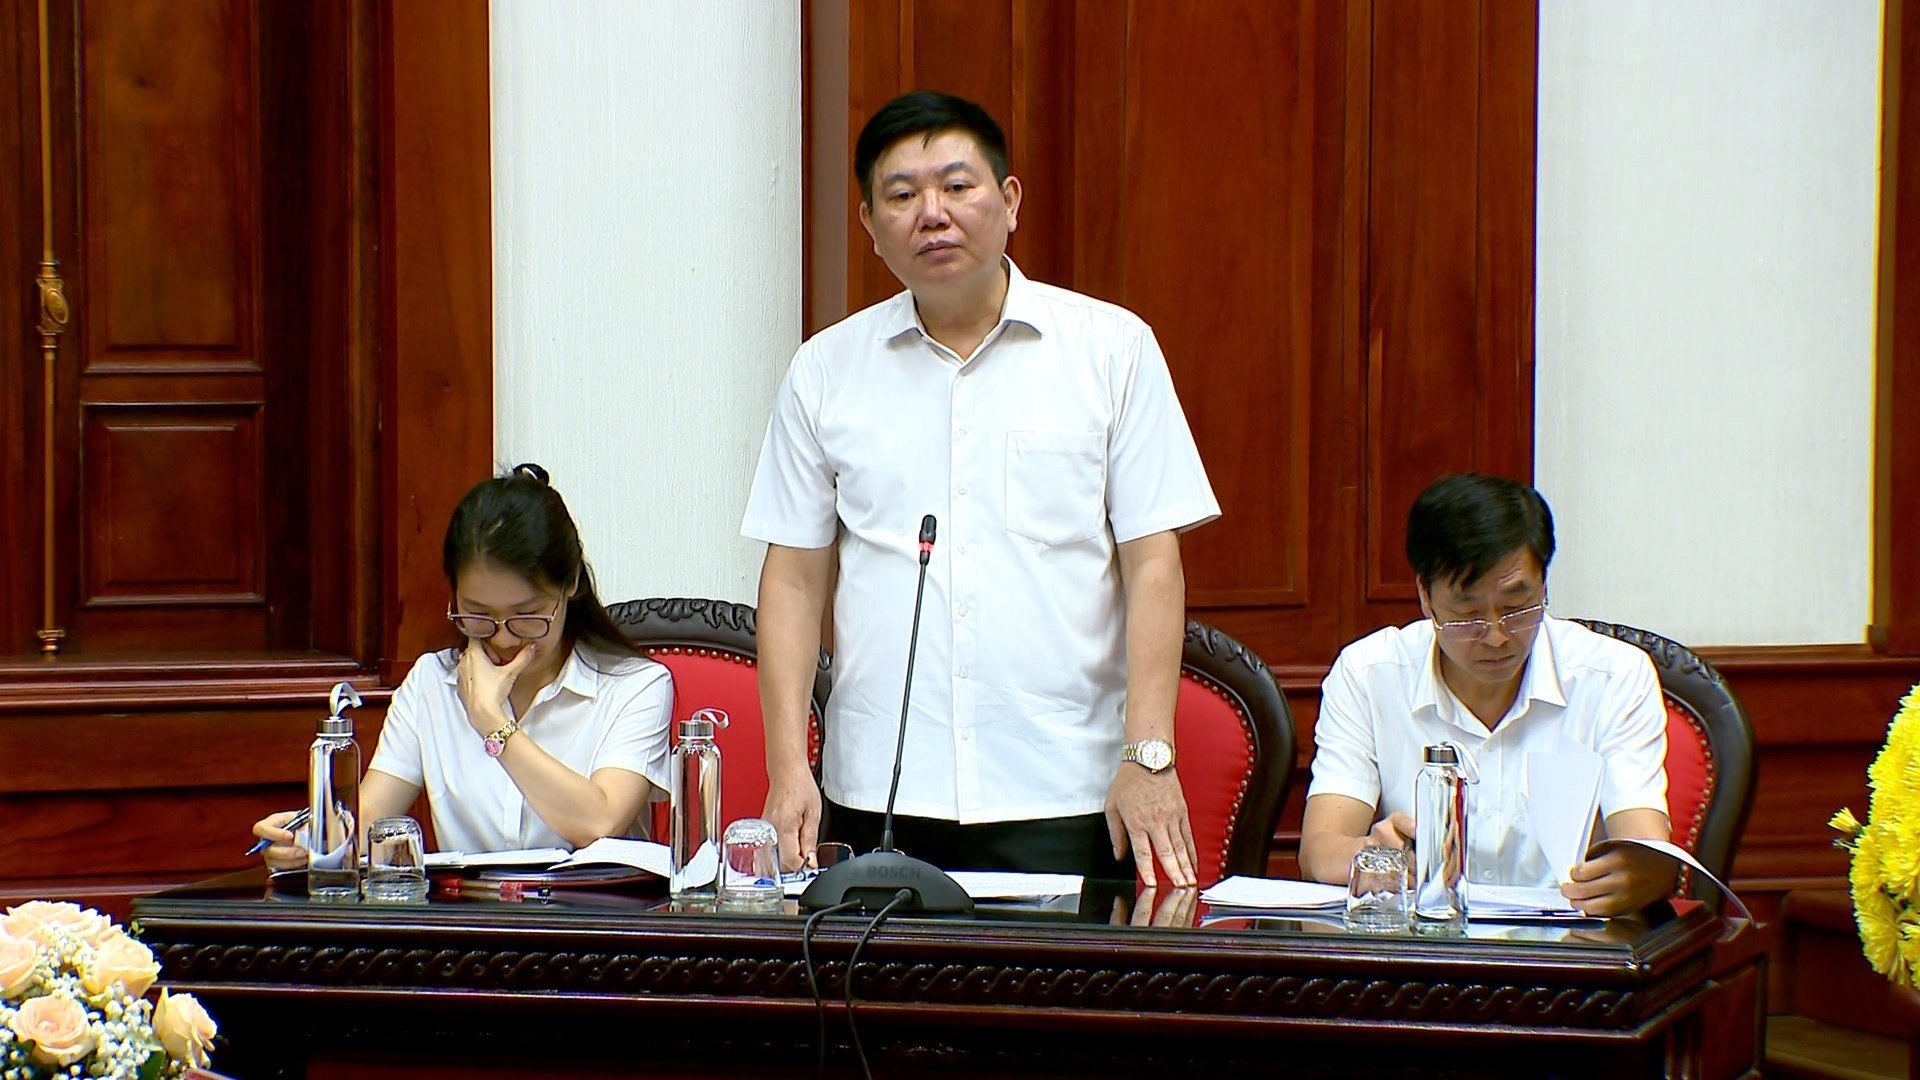  Ông Lê Hùng Thắng, Phó giám đốc Sở Tài nguyên và Môi trường tỉnh Ninh Bình trả lợi chất vấn của các đại biểu. Ảnh: Diệu Anh